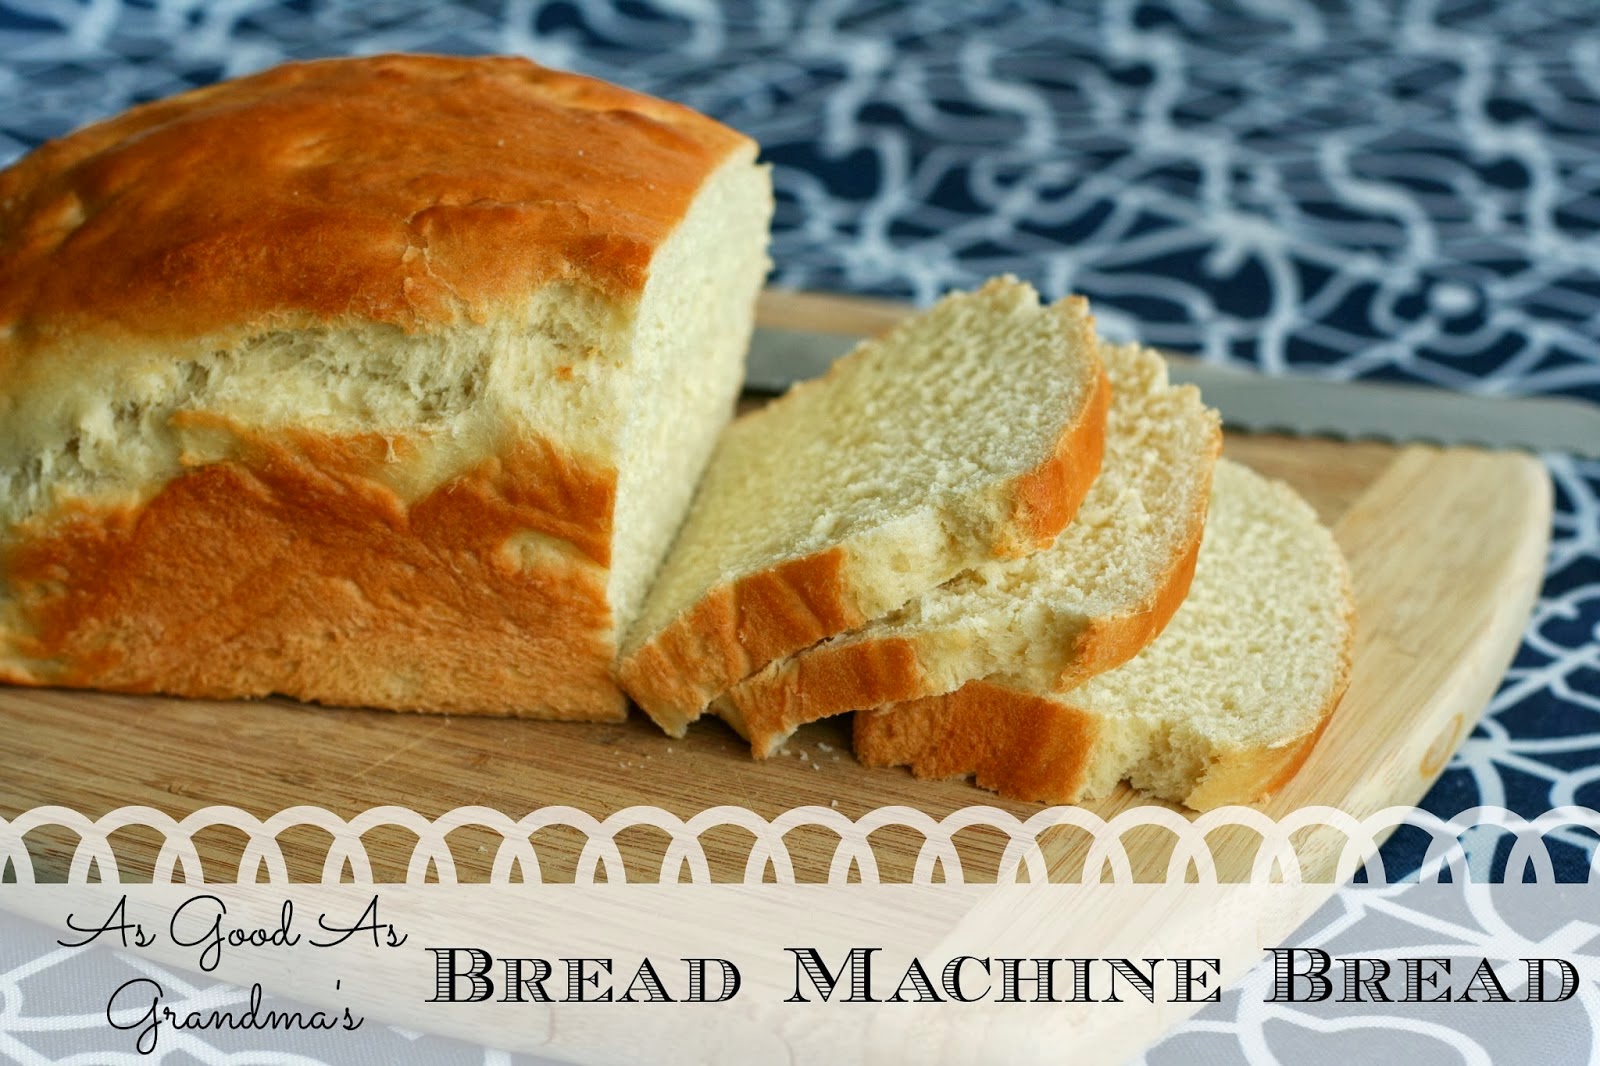 grandma's bread recipe